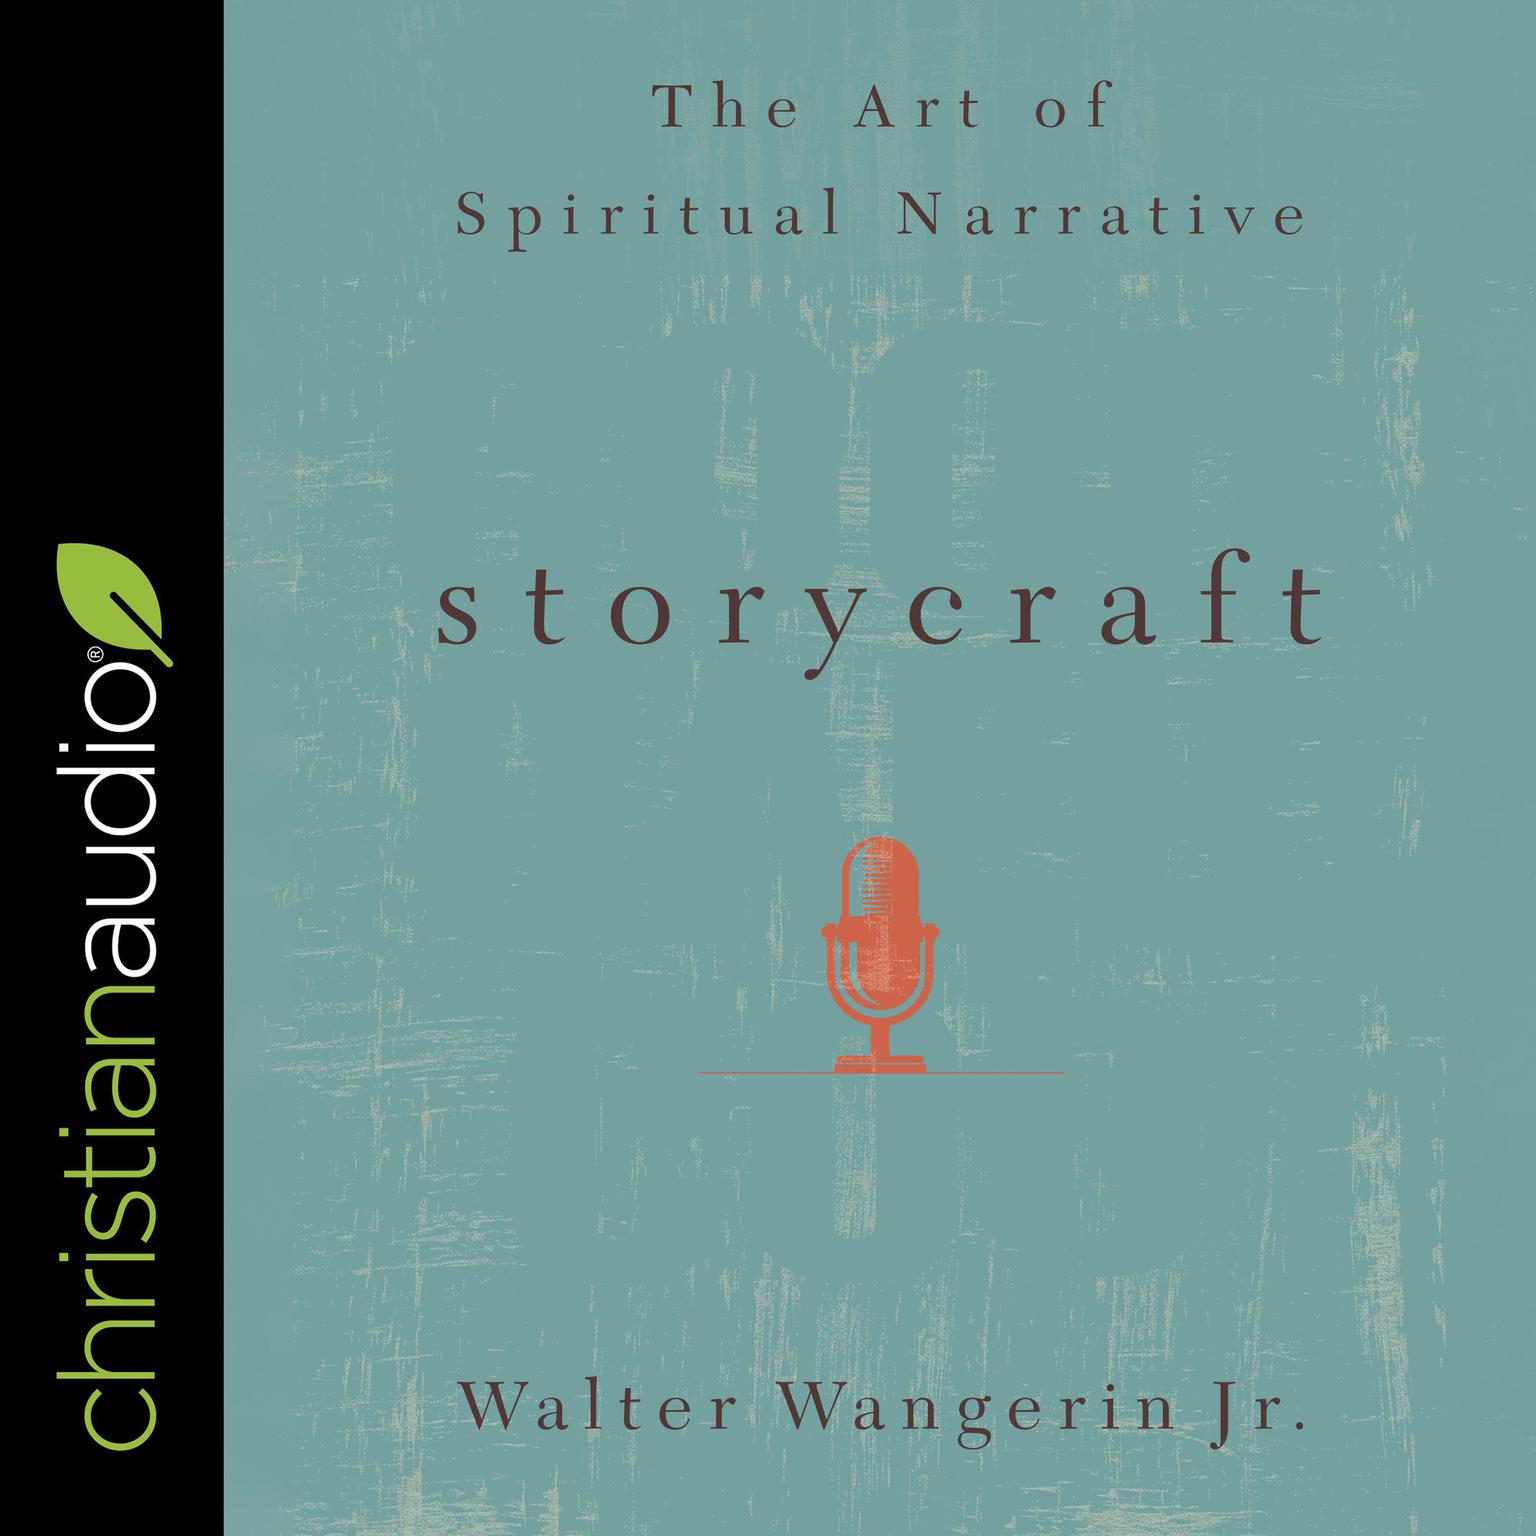 Storycraft: The Art of Spiritual Narrative Audiobook, by Walter Wangerin